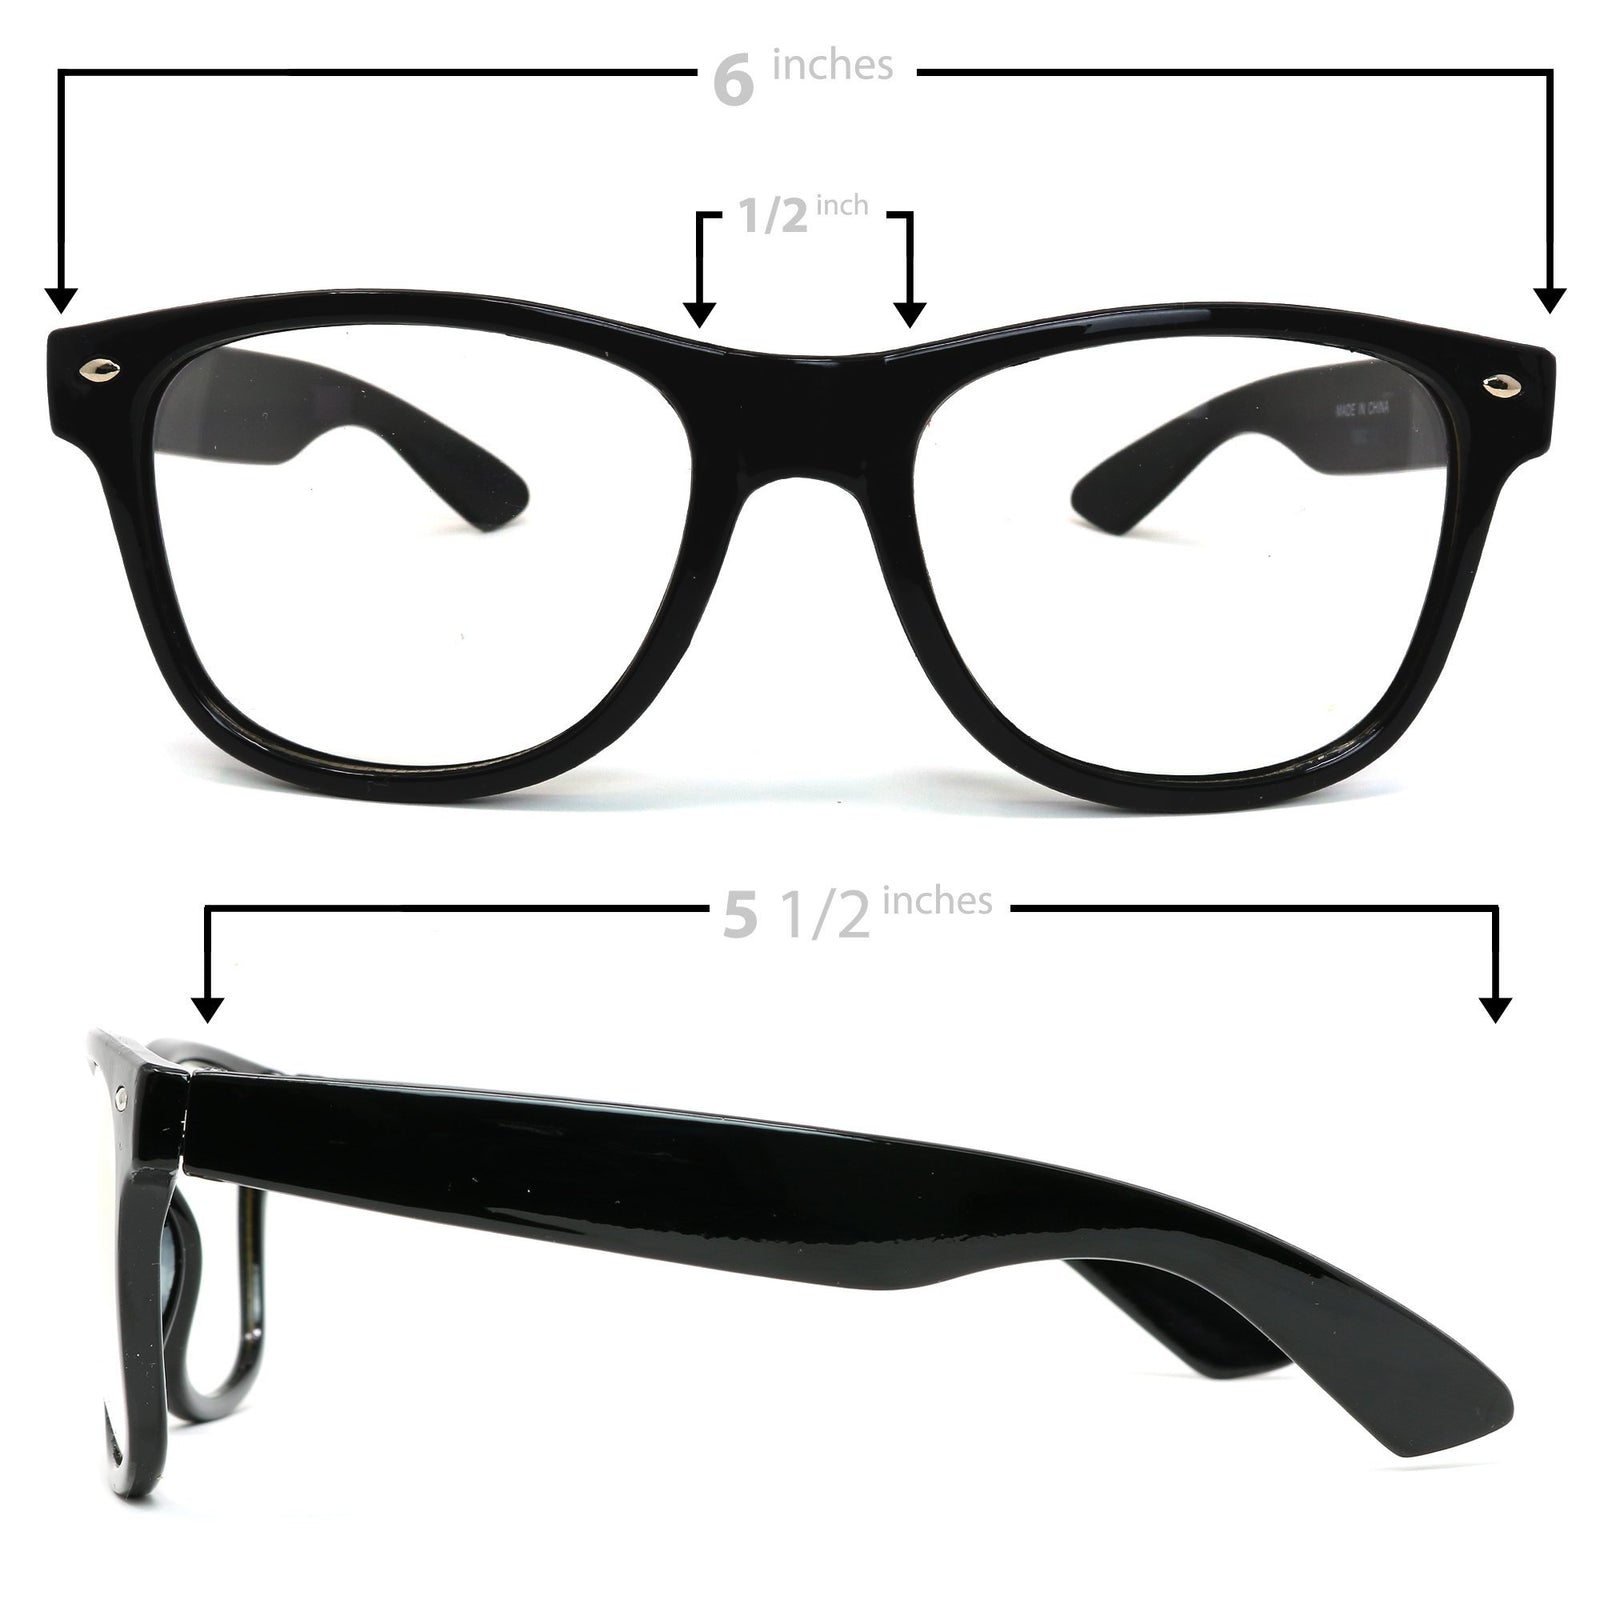 Skeleteen Retro Nerd Costume Glasses - Oversized Black Hipster Eyeglasses with Clear Lenses - 1 Pair